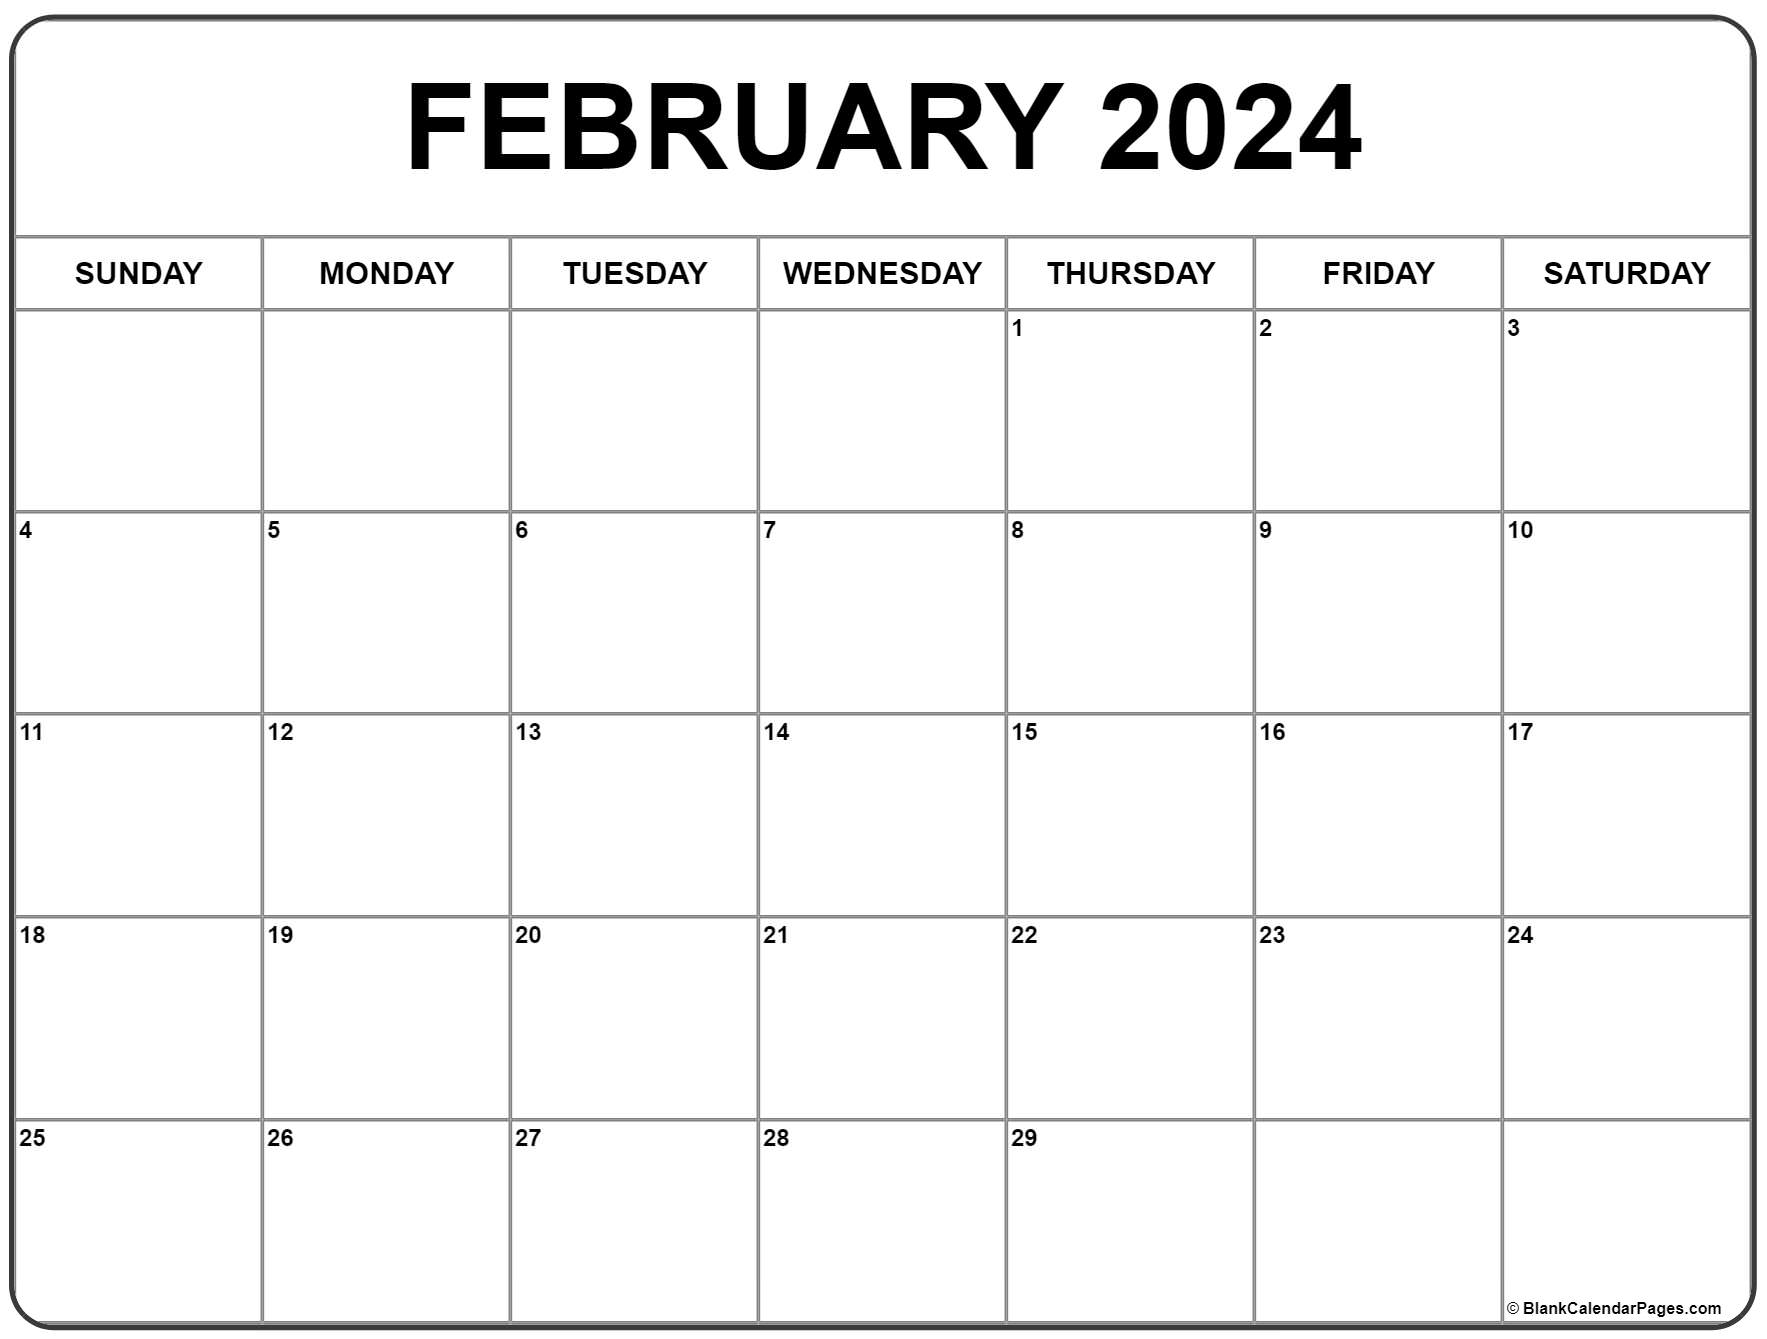 February 2024 Calendar | Free Printable Calendar for Free Printable Calendar For February 2024